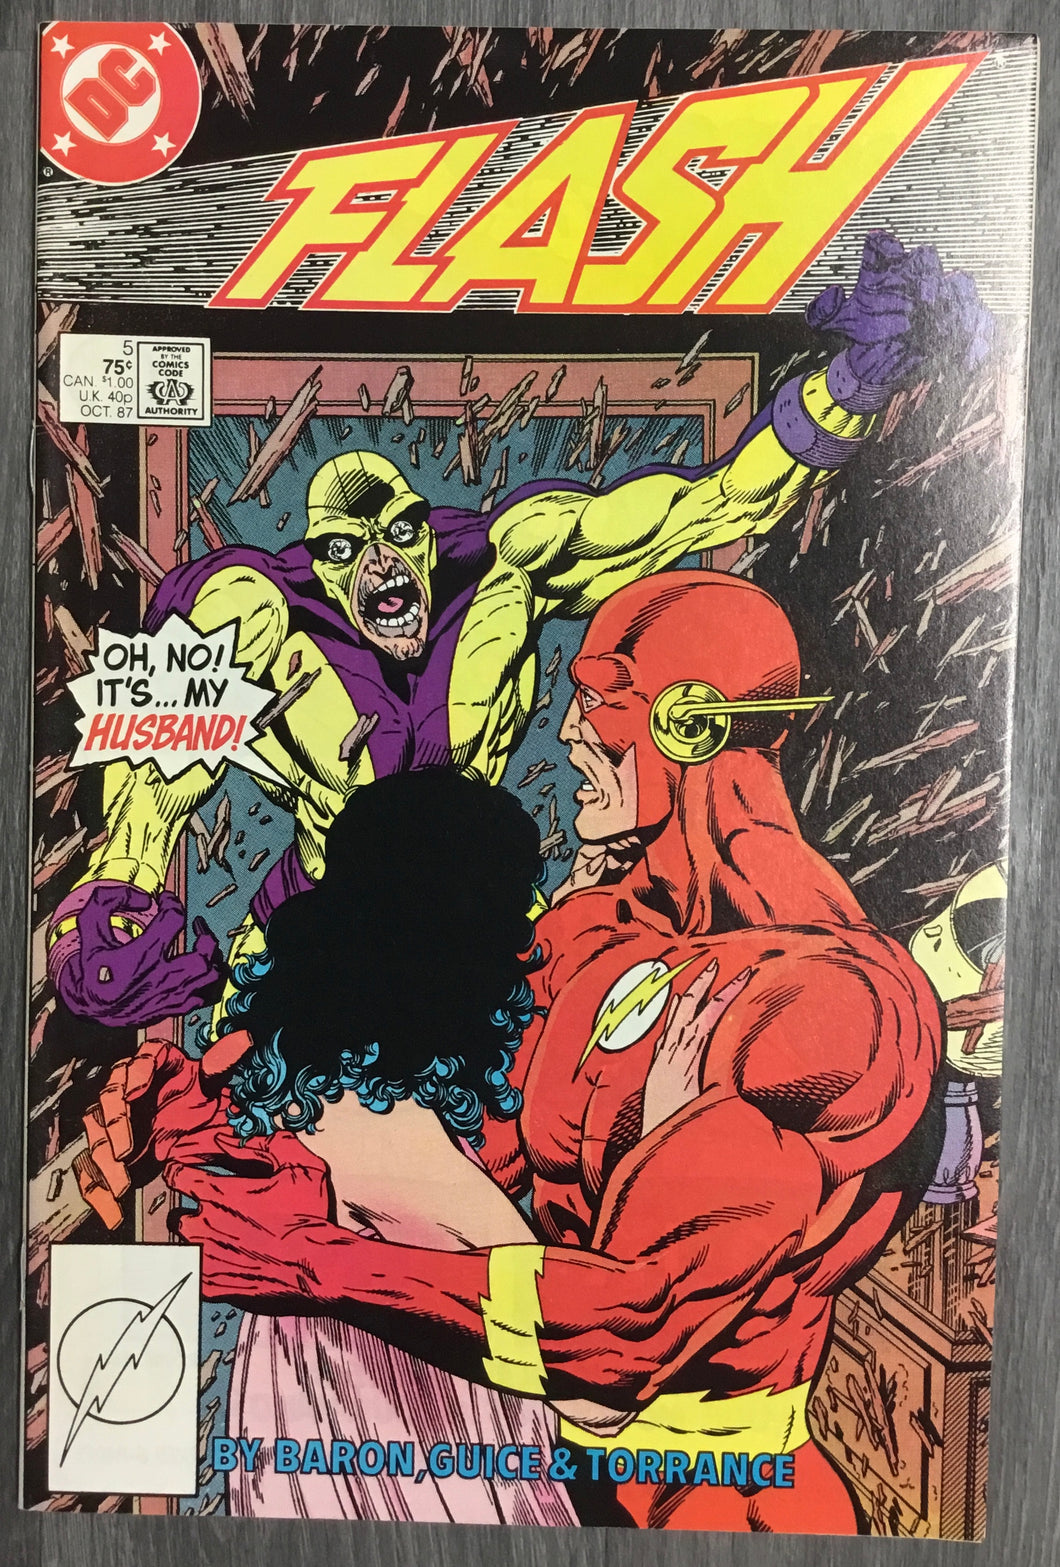 The Flash No. #5 1987 DC Comics